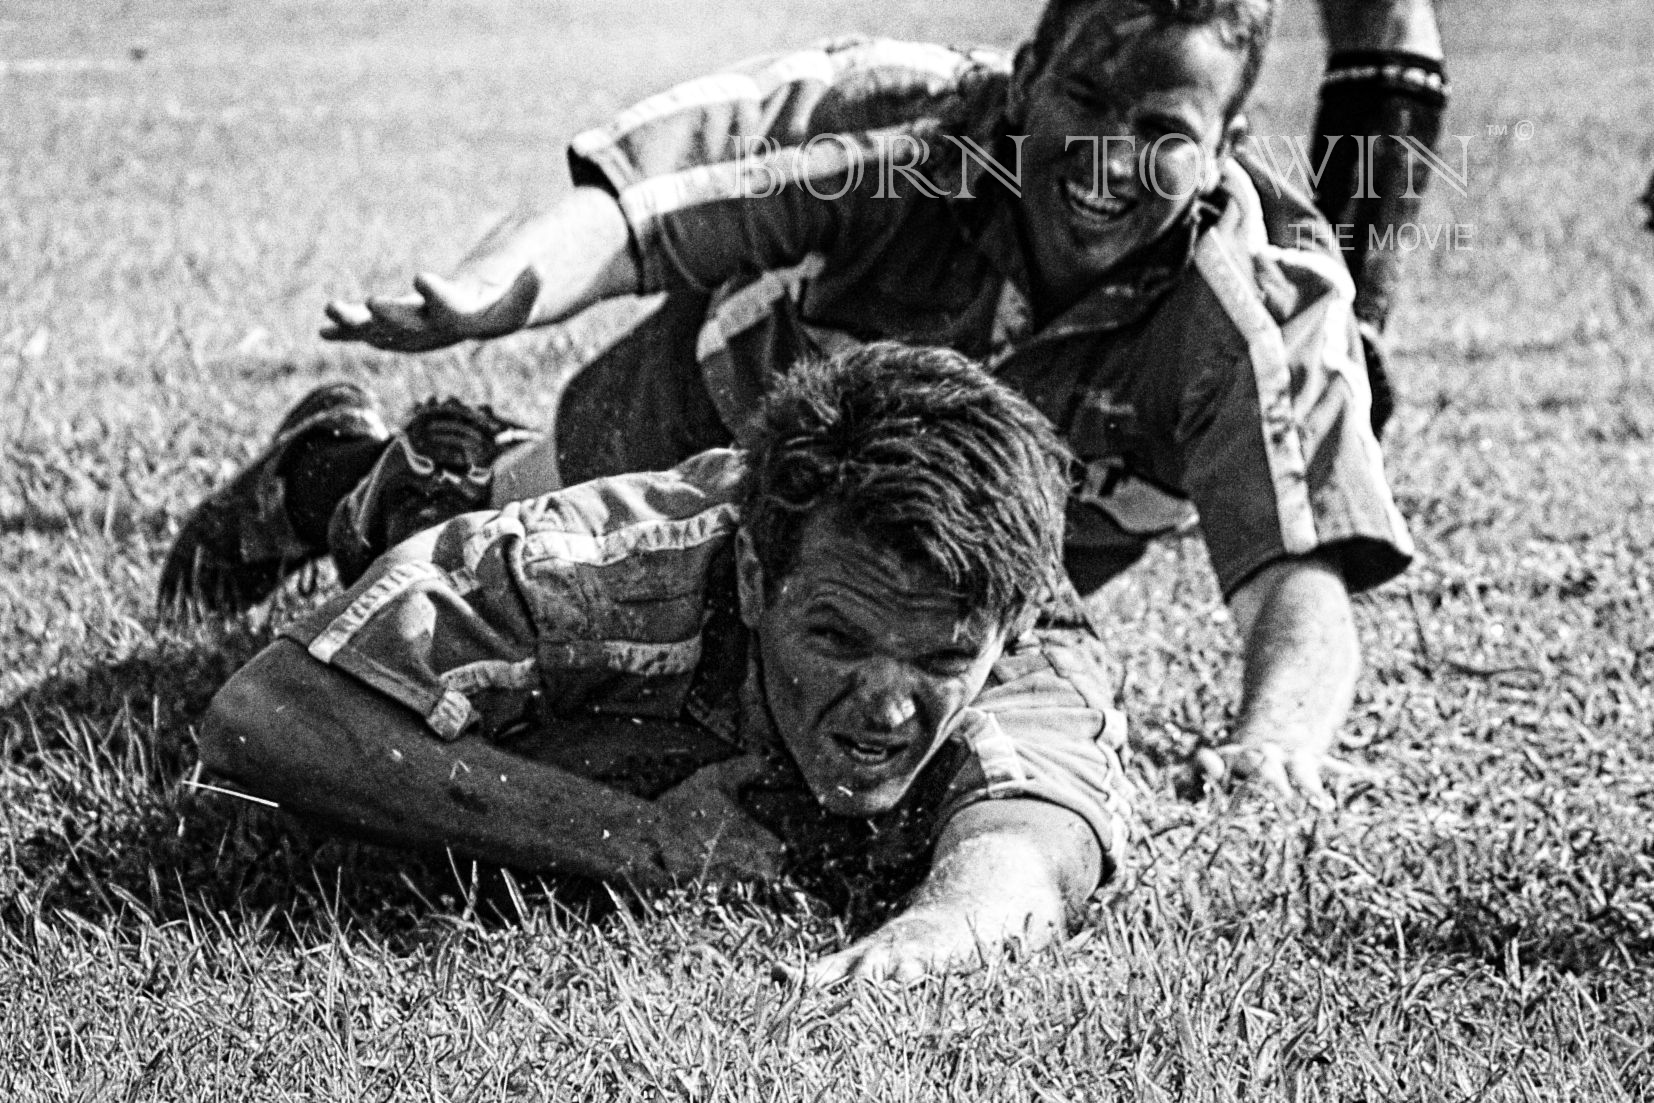 Greg Kriek playing rugby